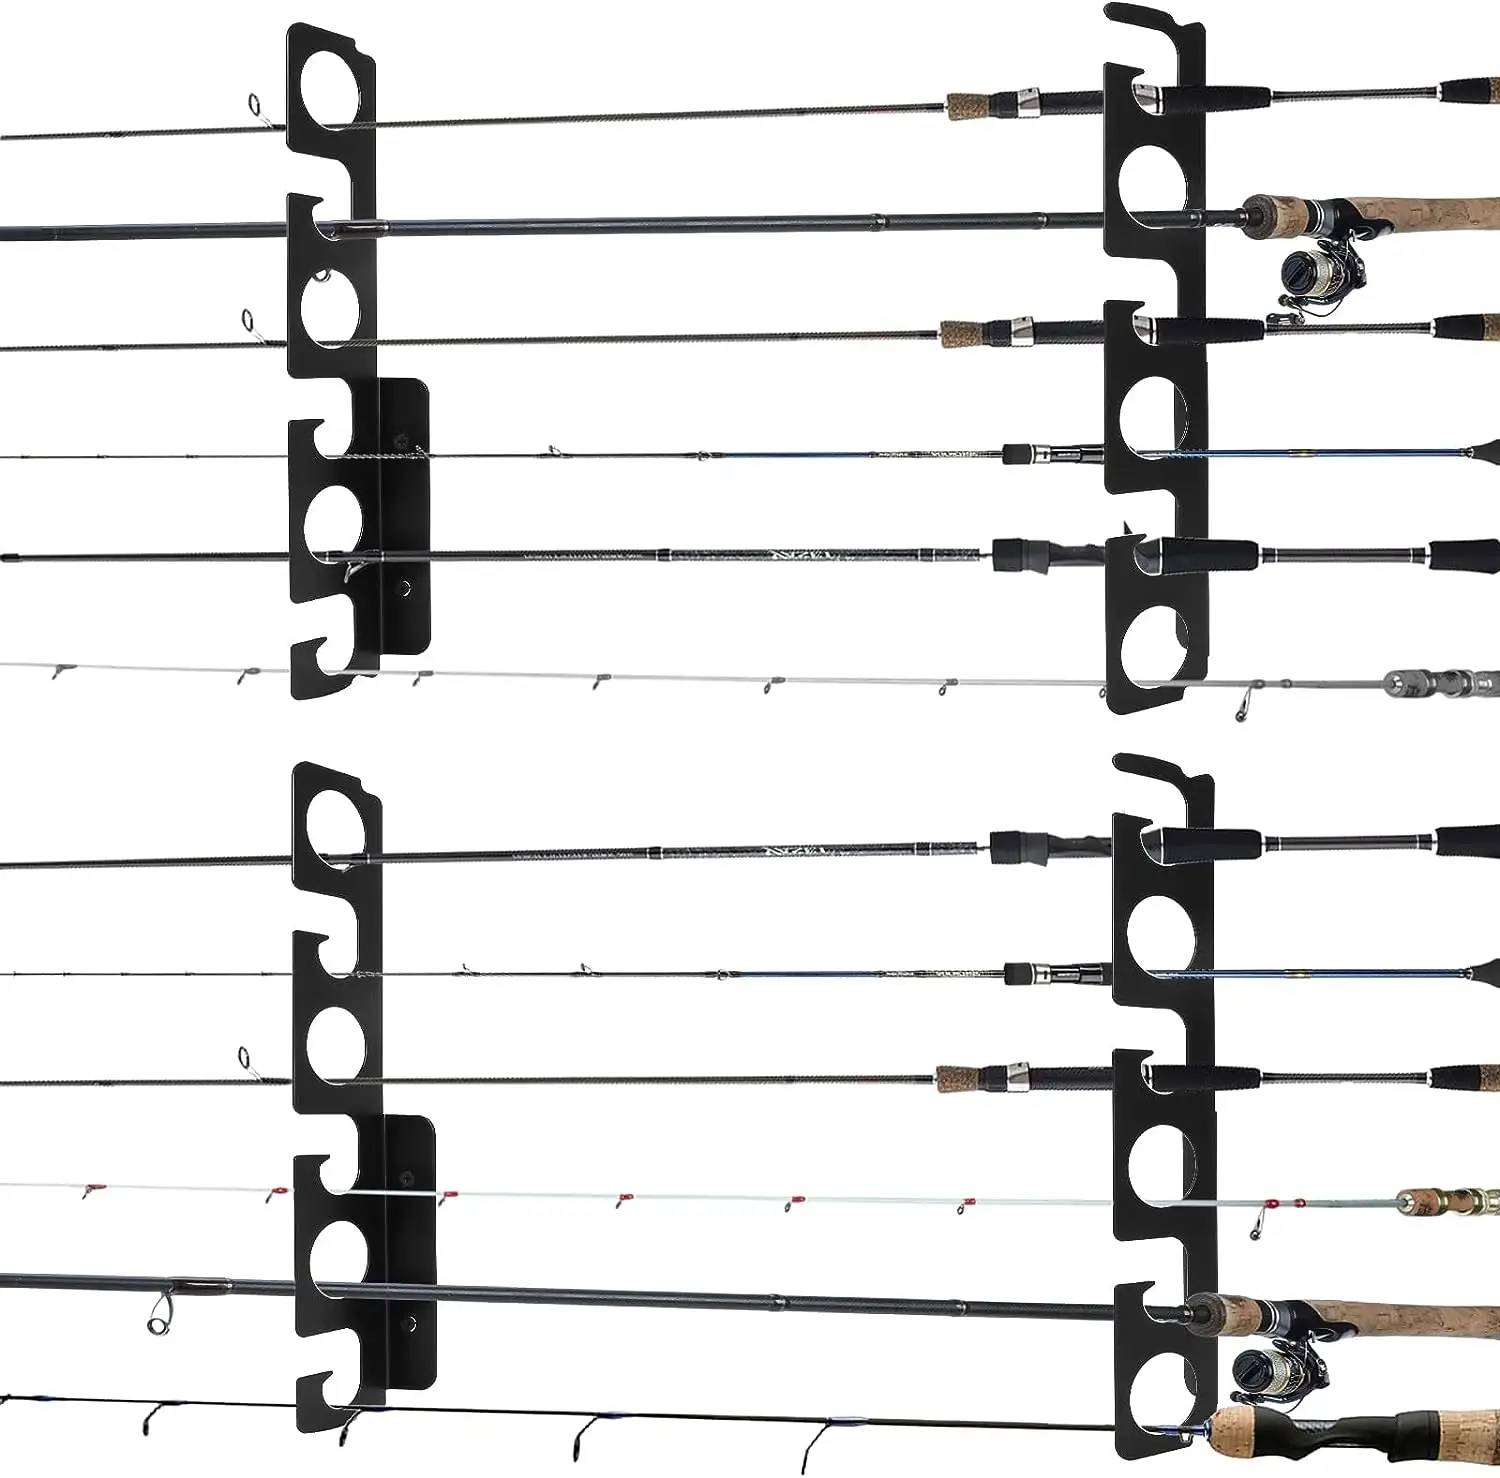 Portacanne da pesca in acciaio montaggio a parete montaggio a soffitto canna da pesca portacanna portaoggetti gancio di stoccaggio può contenere fino a 12 canne da pesca